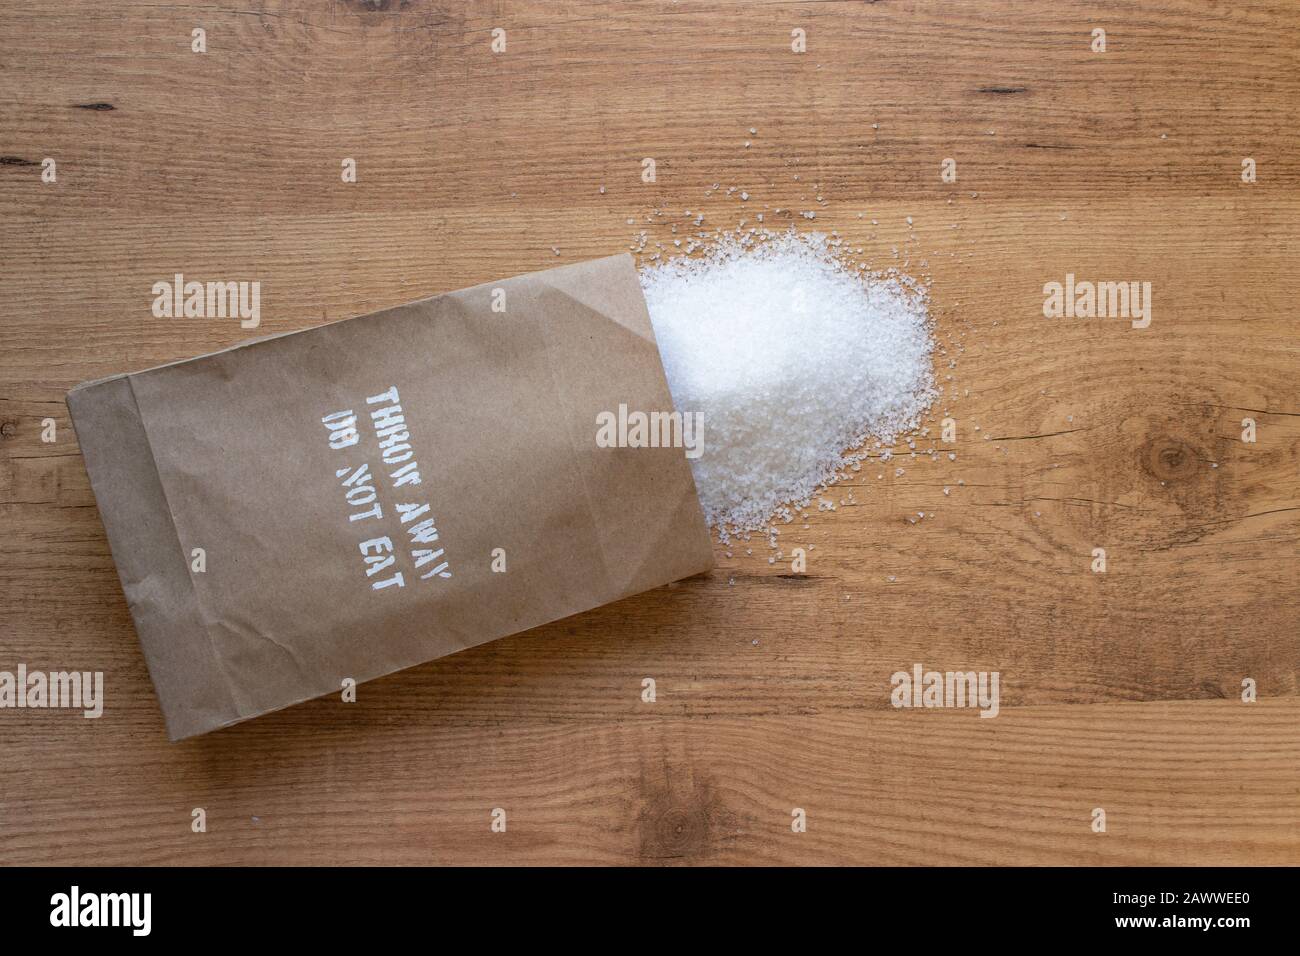 SAL en el paquete de papel de la mesa. "Tirar, no comer" añadió la advertencia de salud de la ingesta de sal en el paquete. Foto de stock